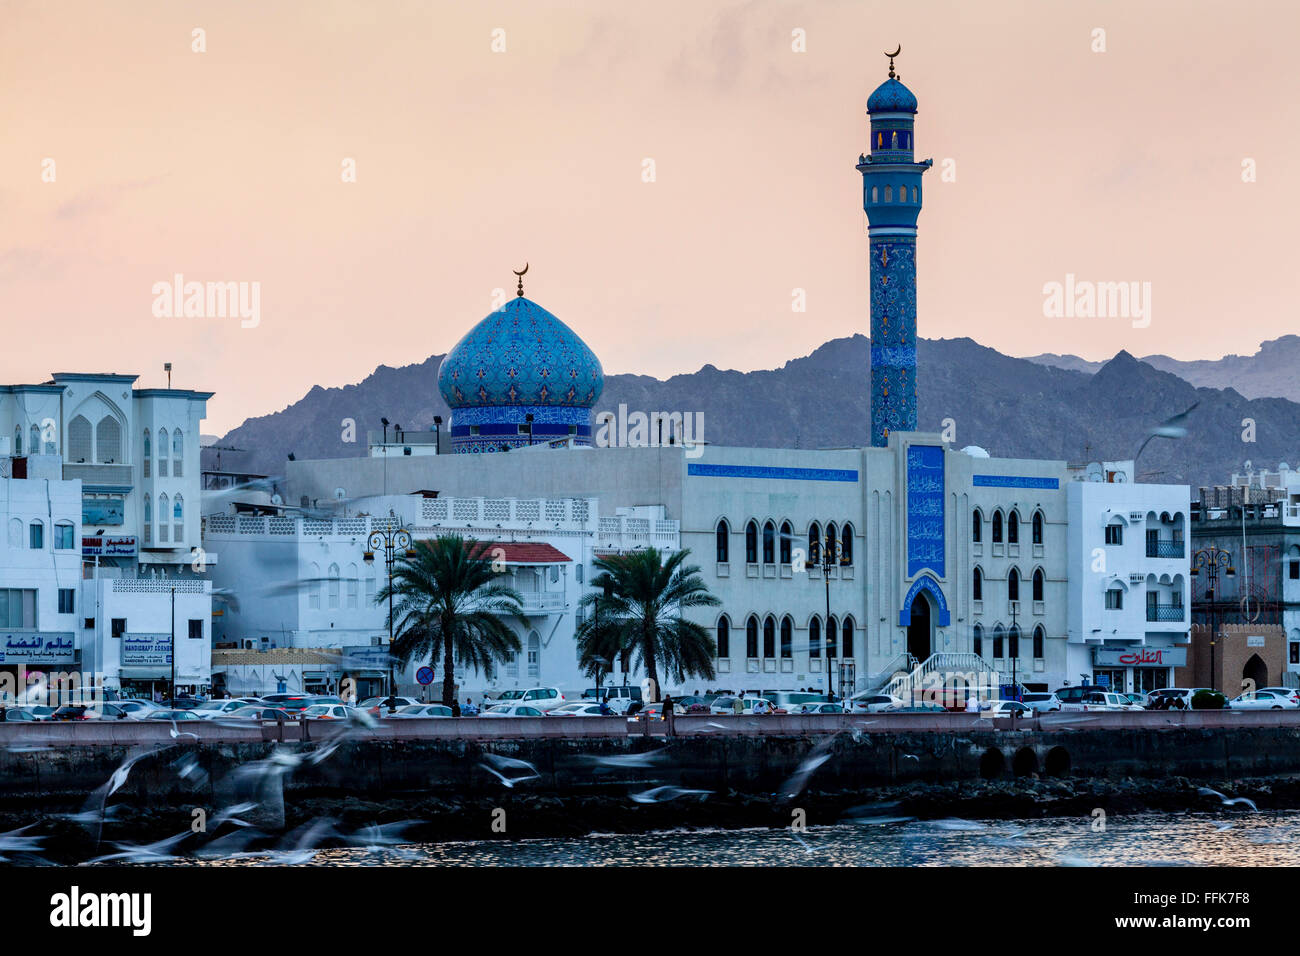 The Corniche (Promenade) At Muttrah, Muscat, Sultanate Of Oman Stock Photo